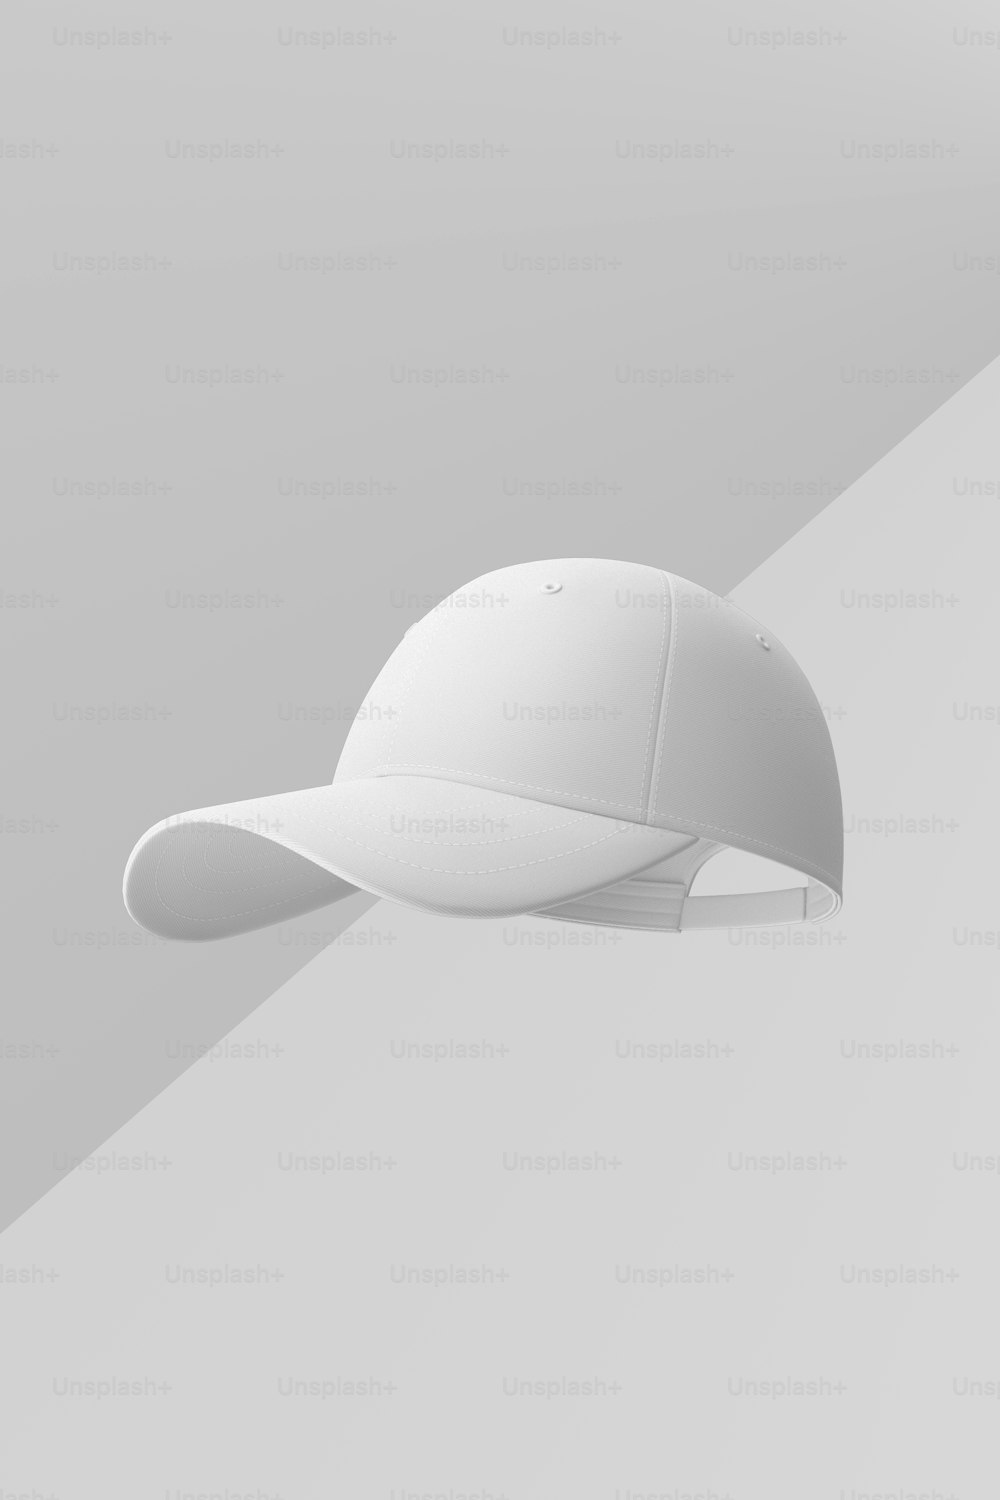 회색 배경에 흰색 야구 모자